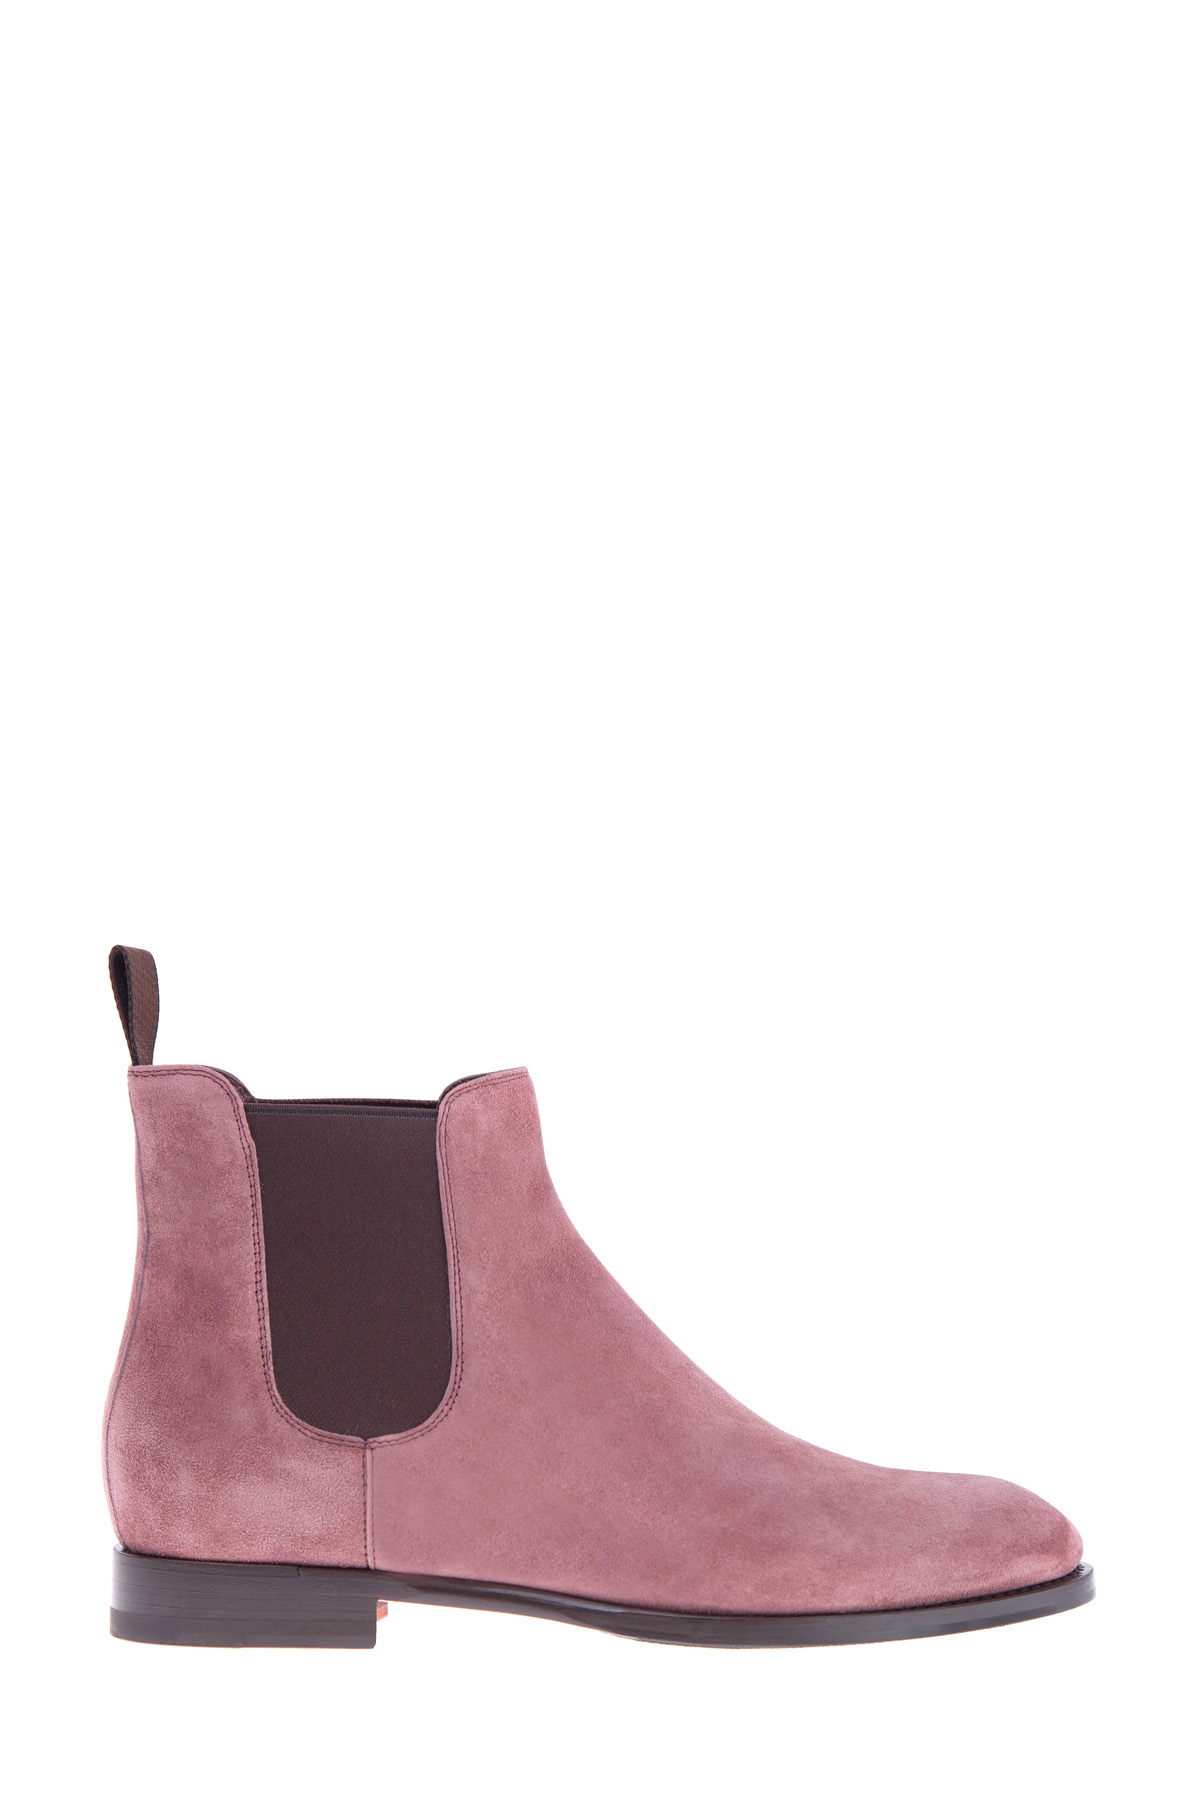 Ботинки-челси из замши розового цвета с контрастной эластичной резинкой SANTONI, размер 36.5 - фото 1